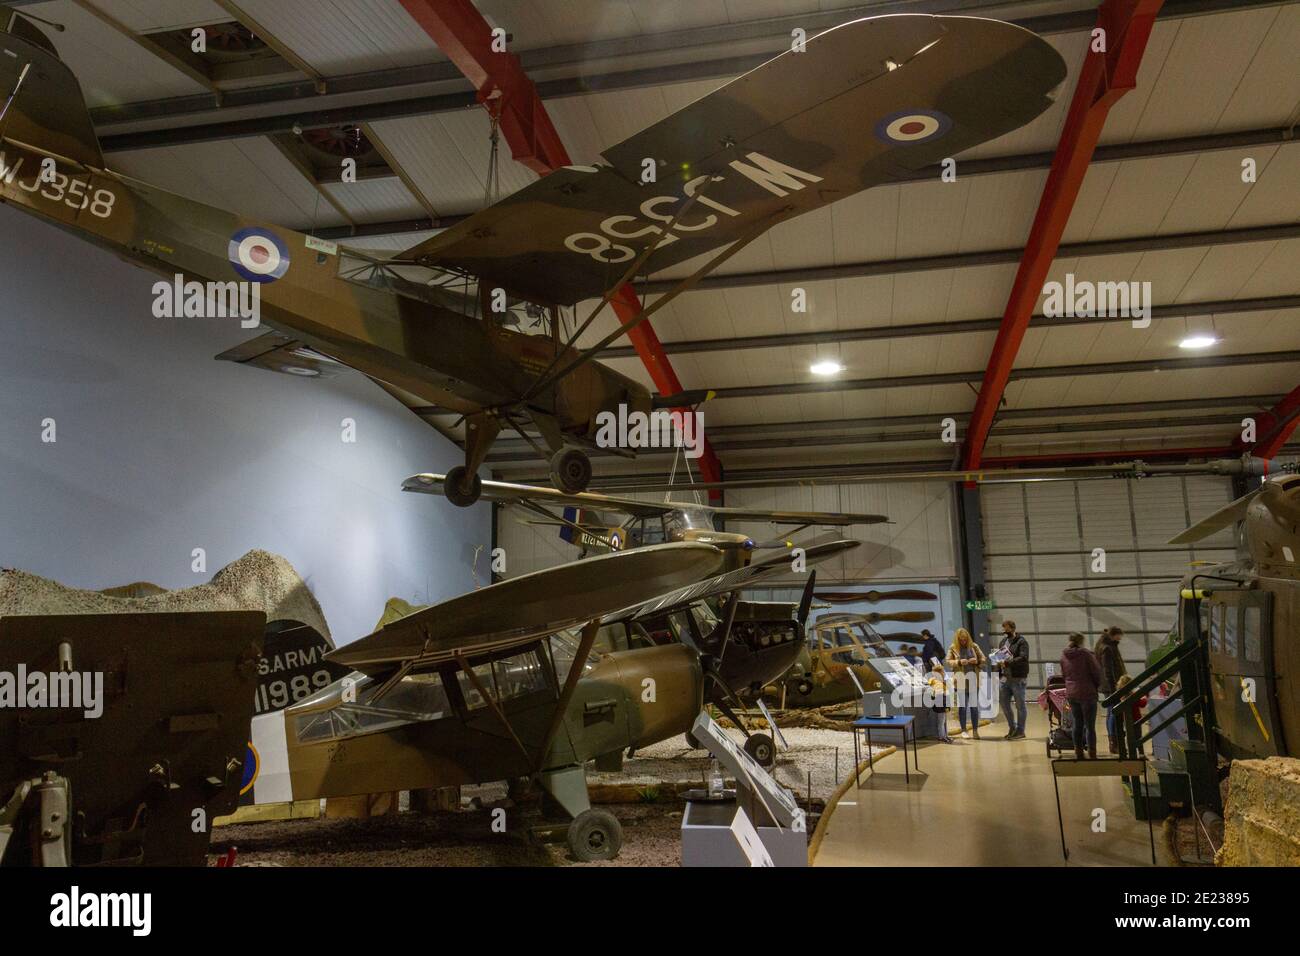 Vue générale des expositions dans le Army Flying Museum, un musée de l'aviation militaire à Stockbridge, Hampshire, Royaume-Uni. Banque D'Images